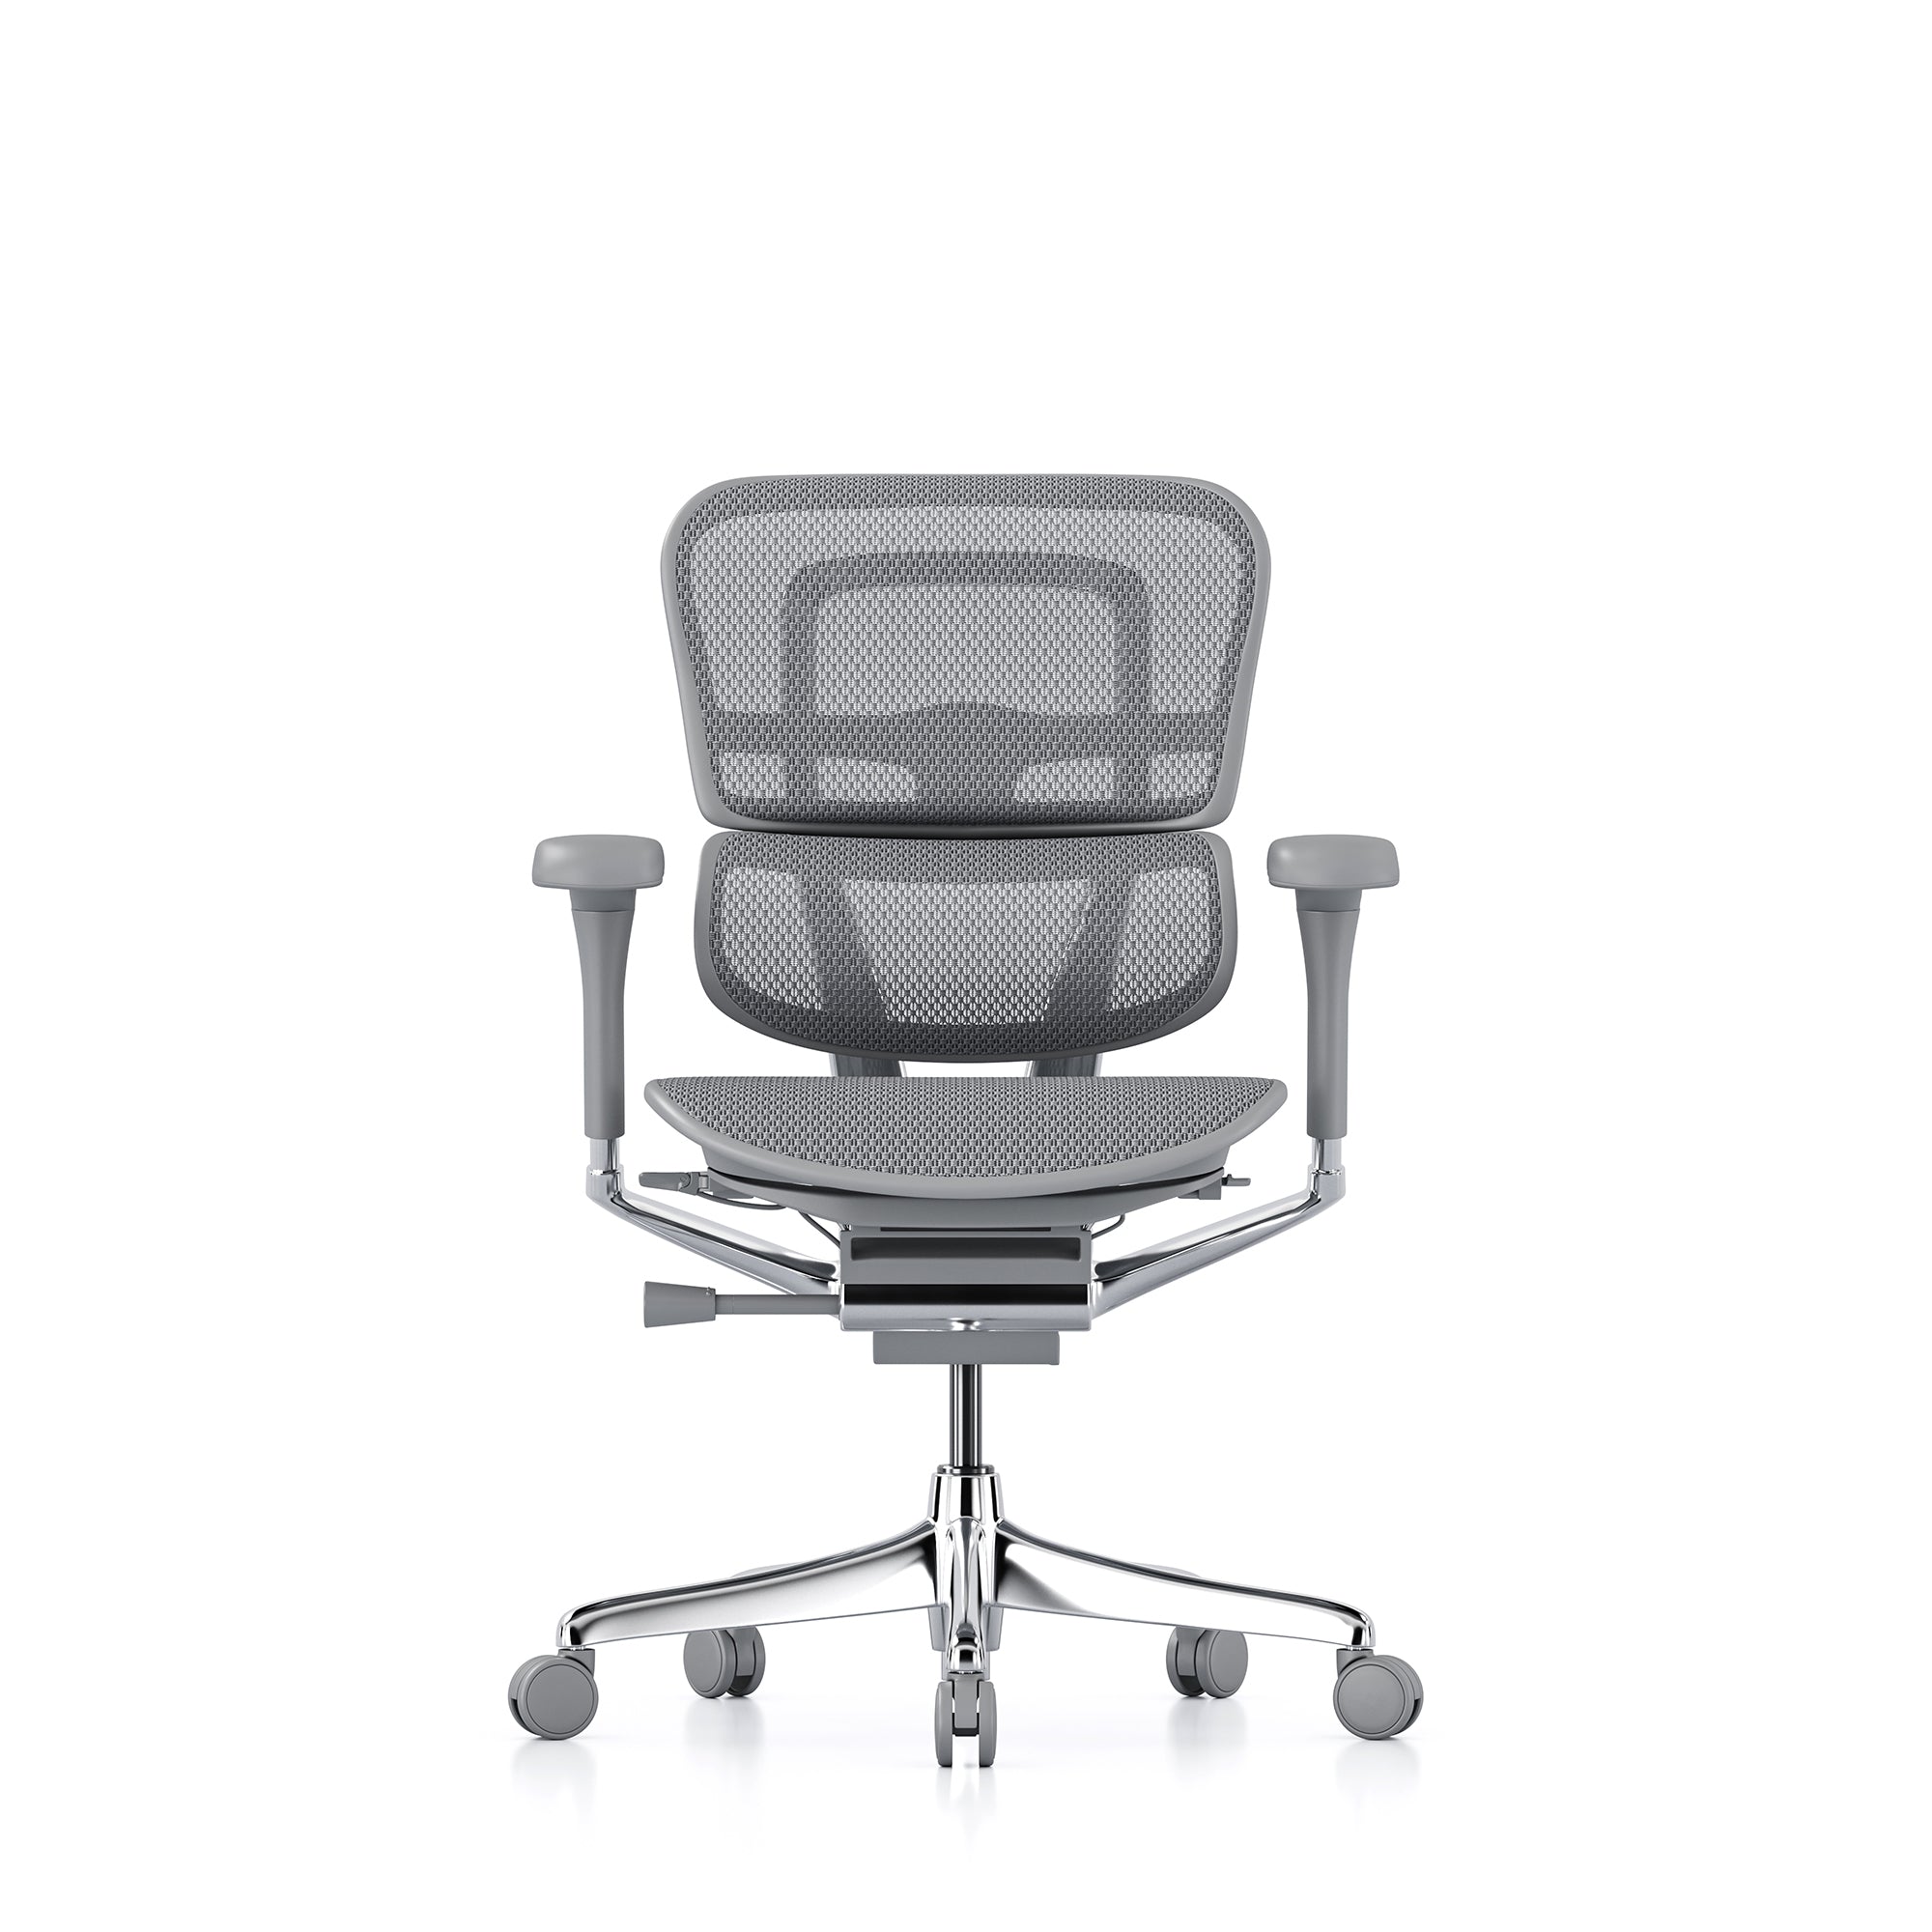 Ergohuman office chairs | Full range of ergonomic office chairs